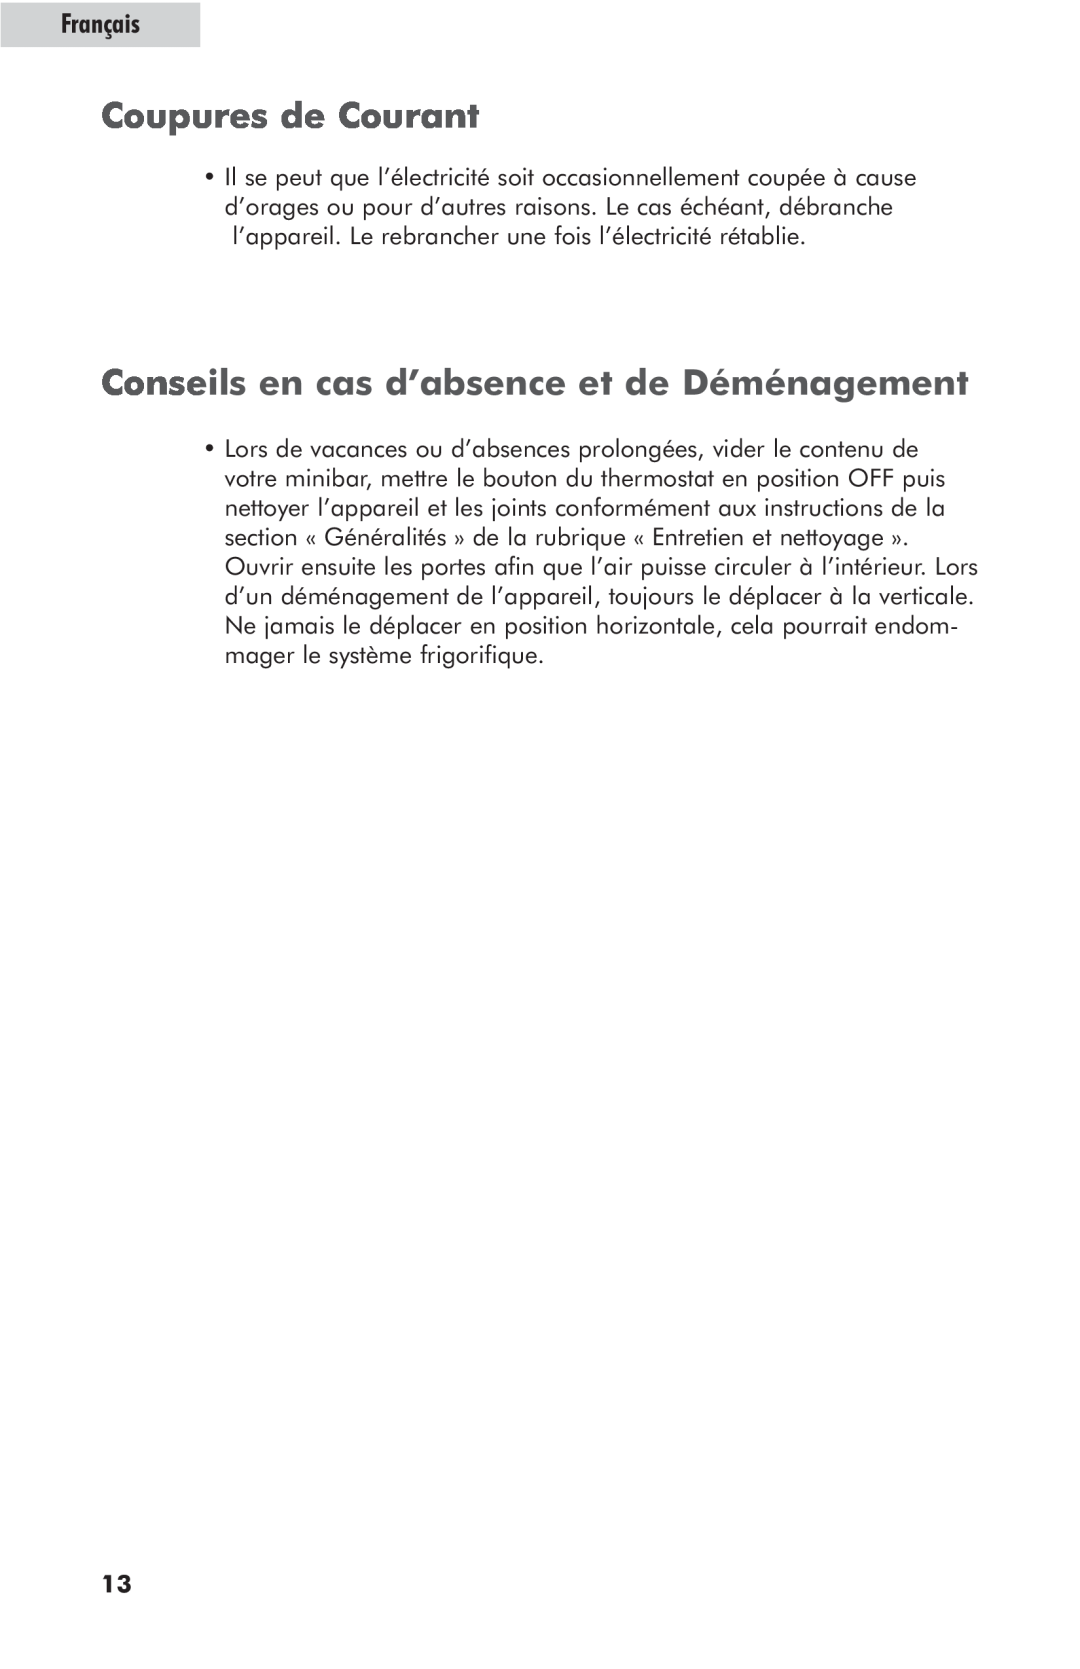 Haier hc125fvs user manual Coupures de Courant, Conseils en cas d’absence et de Déménagement, Français 